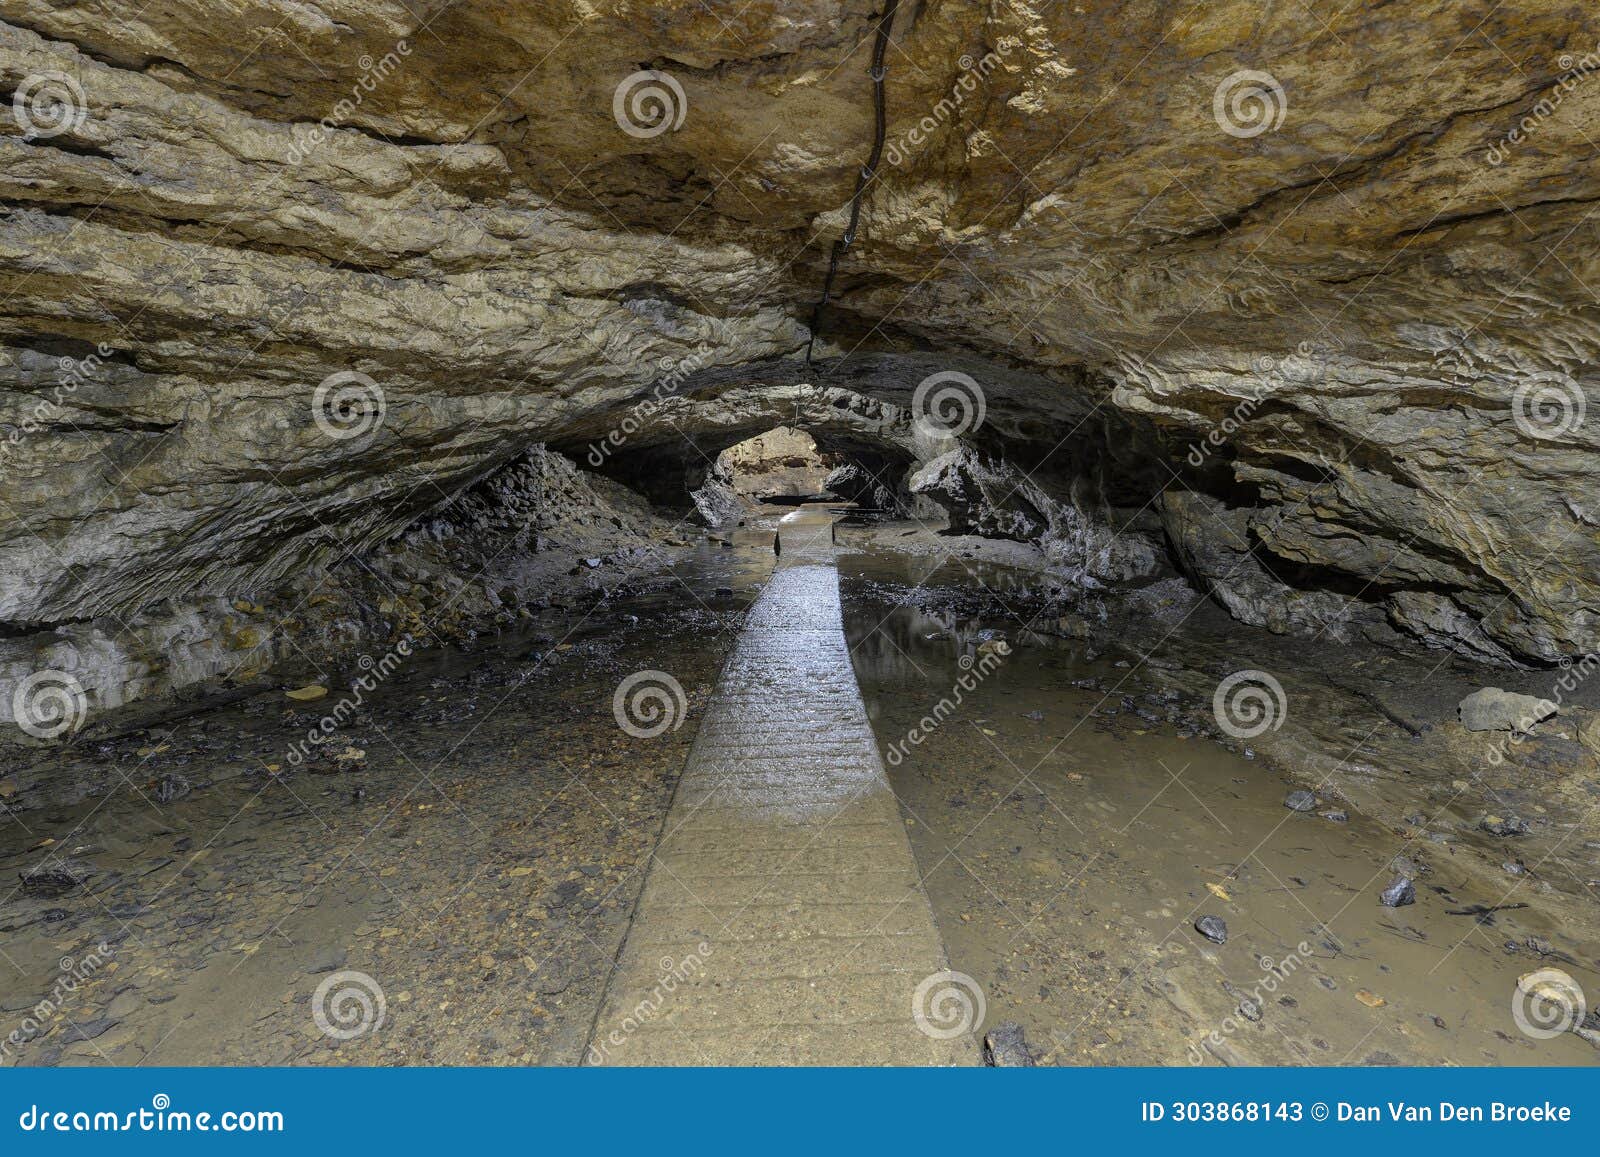 dancehall cave maquoketa caves state park, maquoketa iowa